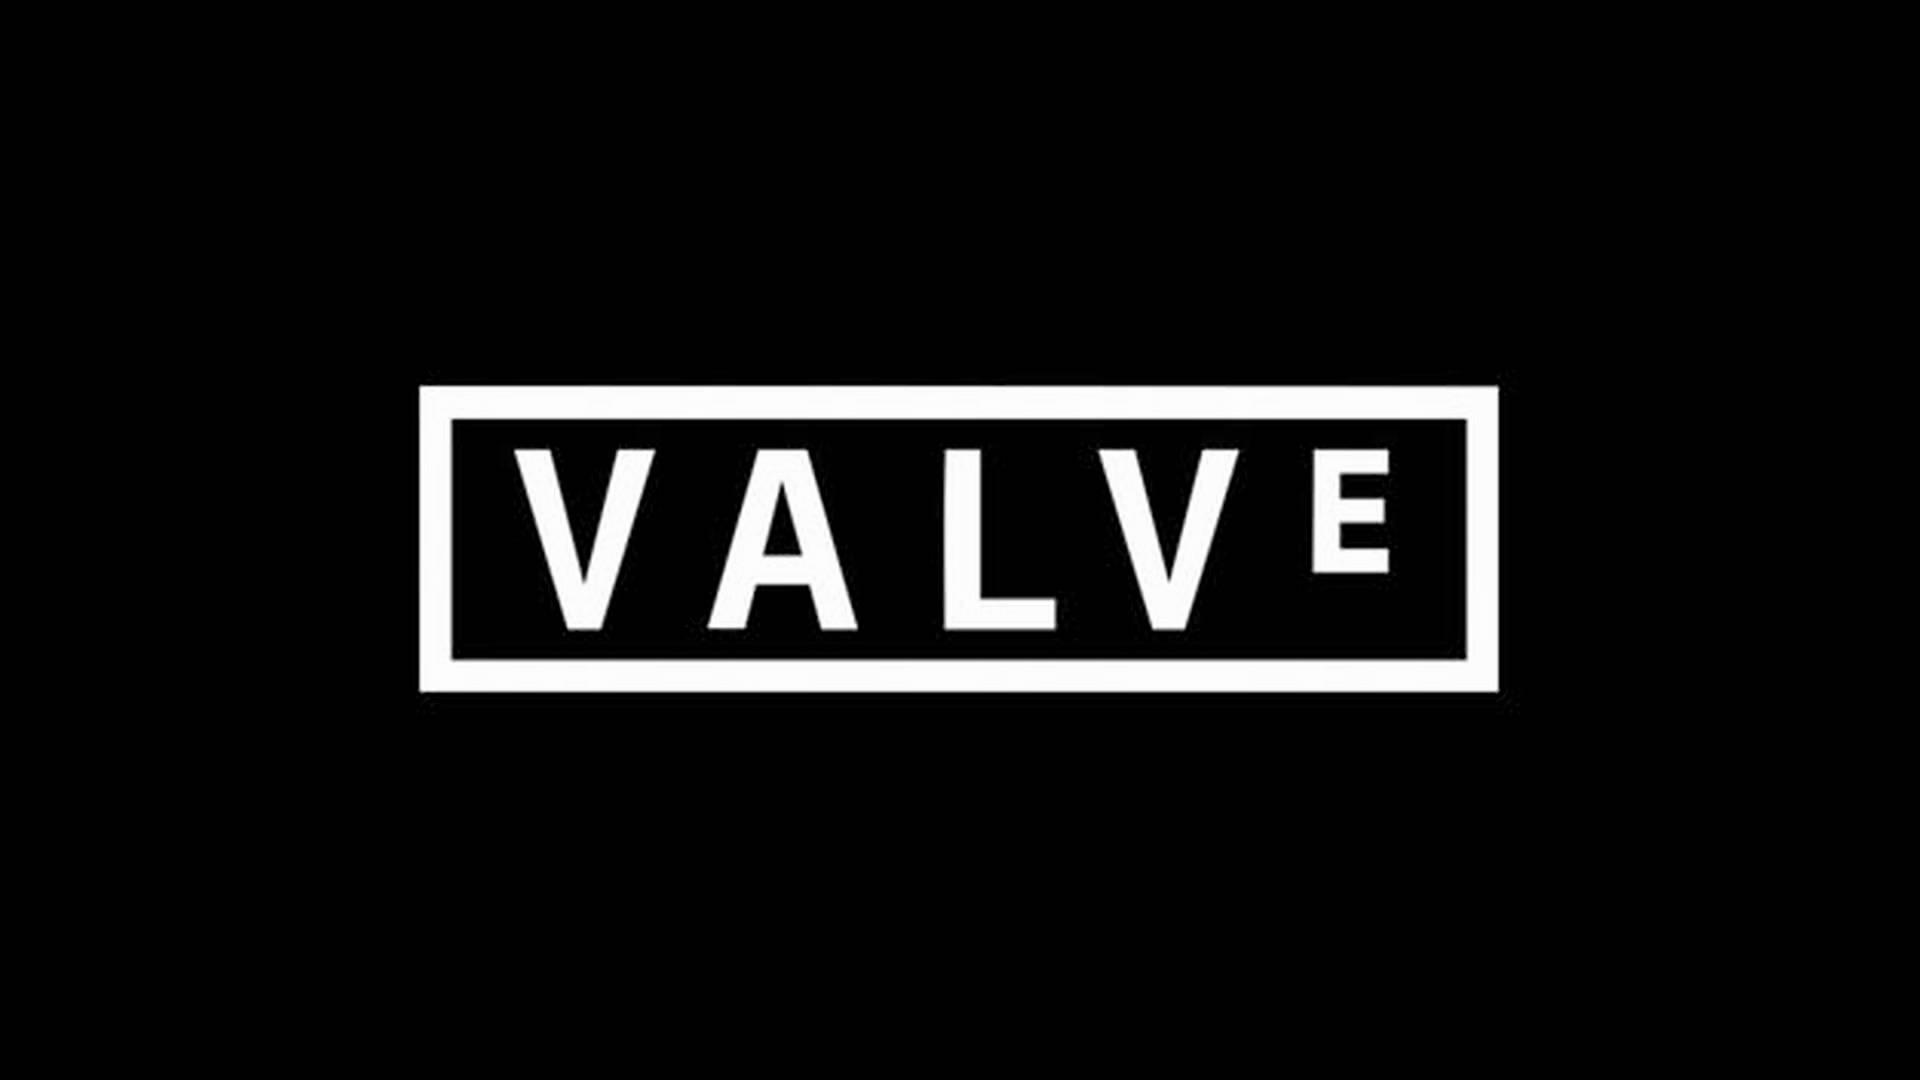 ประธานของ Valve บอกใบ้ว่าอาจจะนำเกมอื่น ๆ มาลงคอนโซล